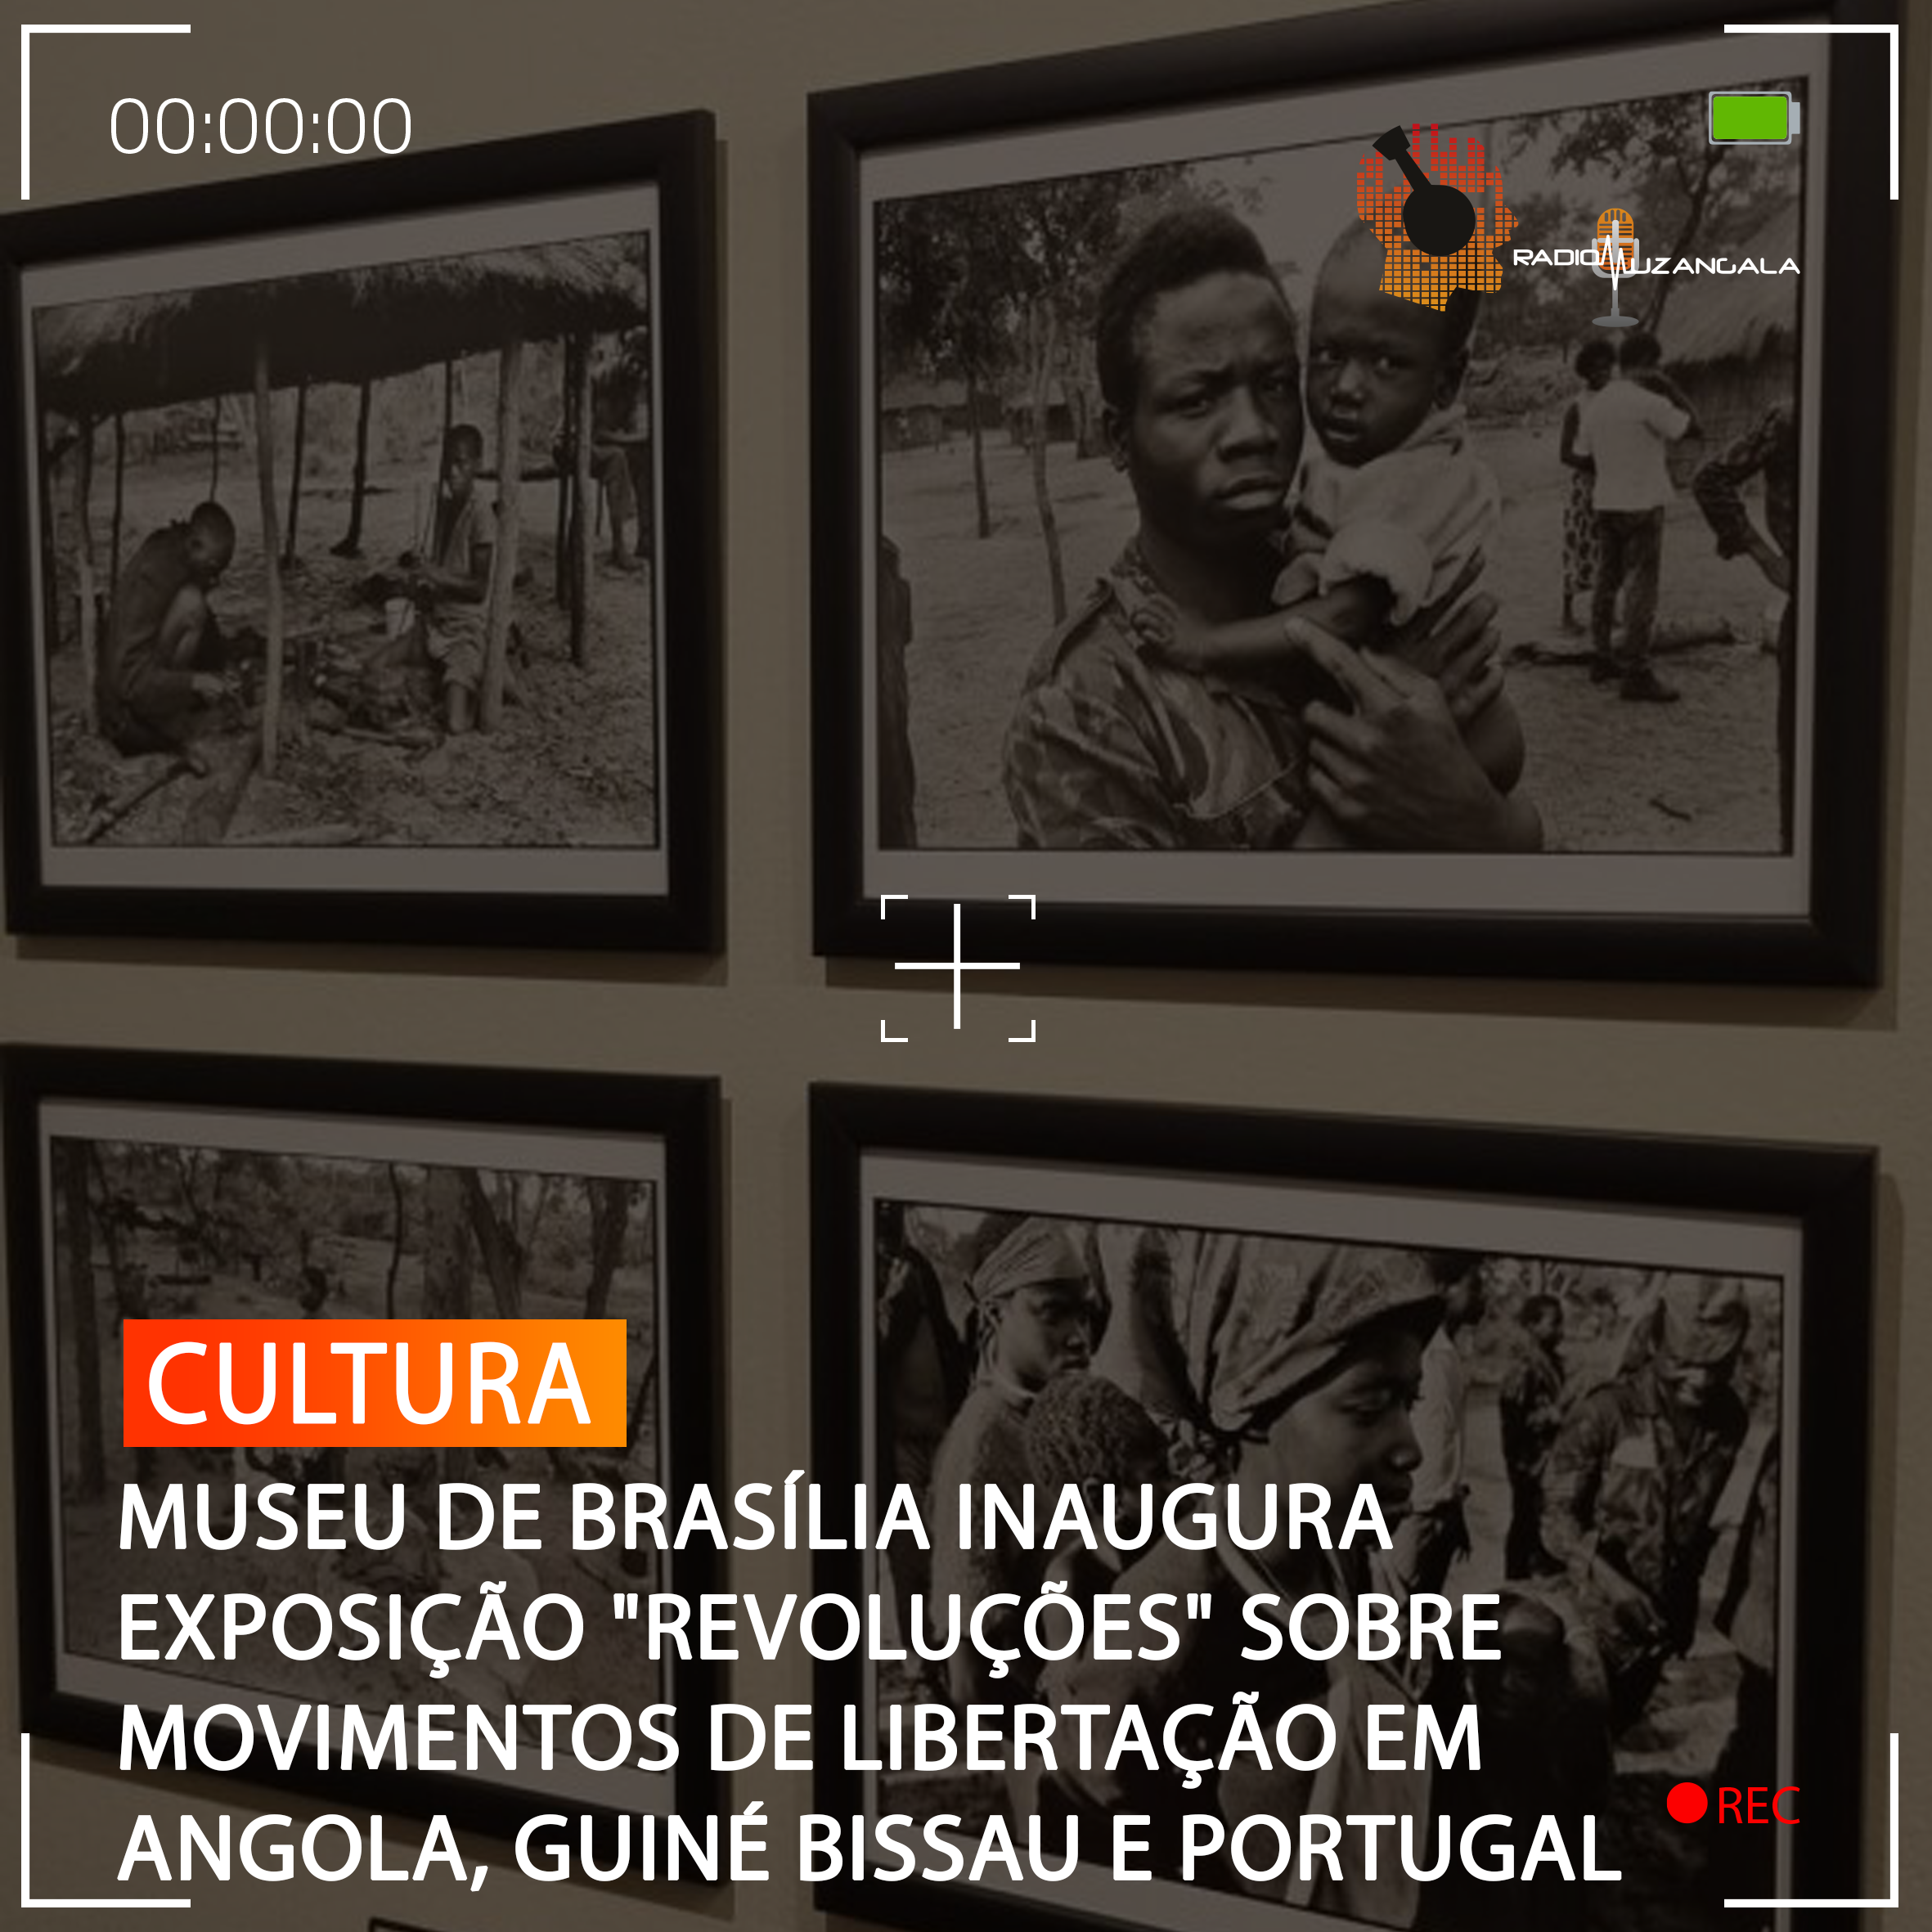  MUSEU DE BRASÍLIA INAUGURA EXPOSIÇÃO “REVOLUÇÕES” SOBRE MOVIMENTOS DE LIBERTAÇÃO EM ANGOLA, GUINÉ BISSAU E PORTUGAL